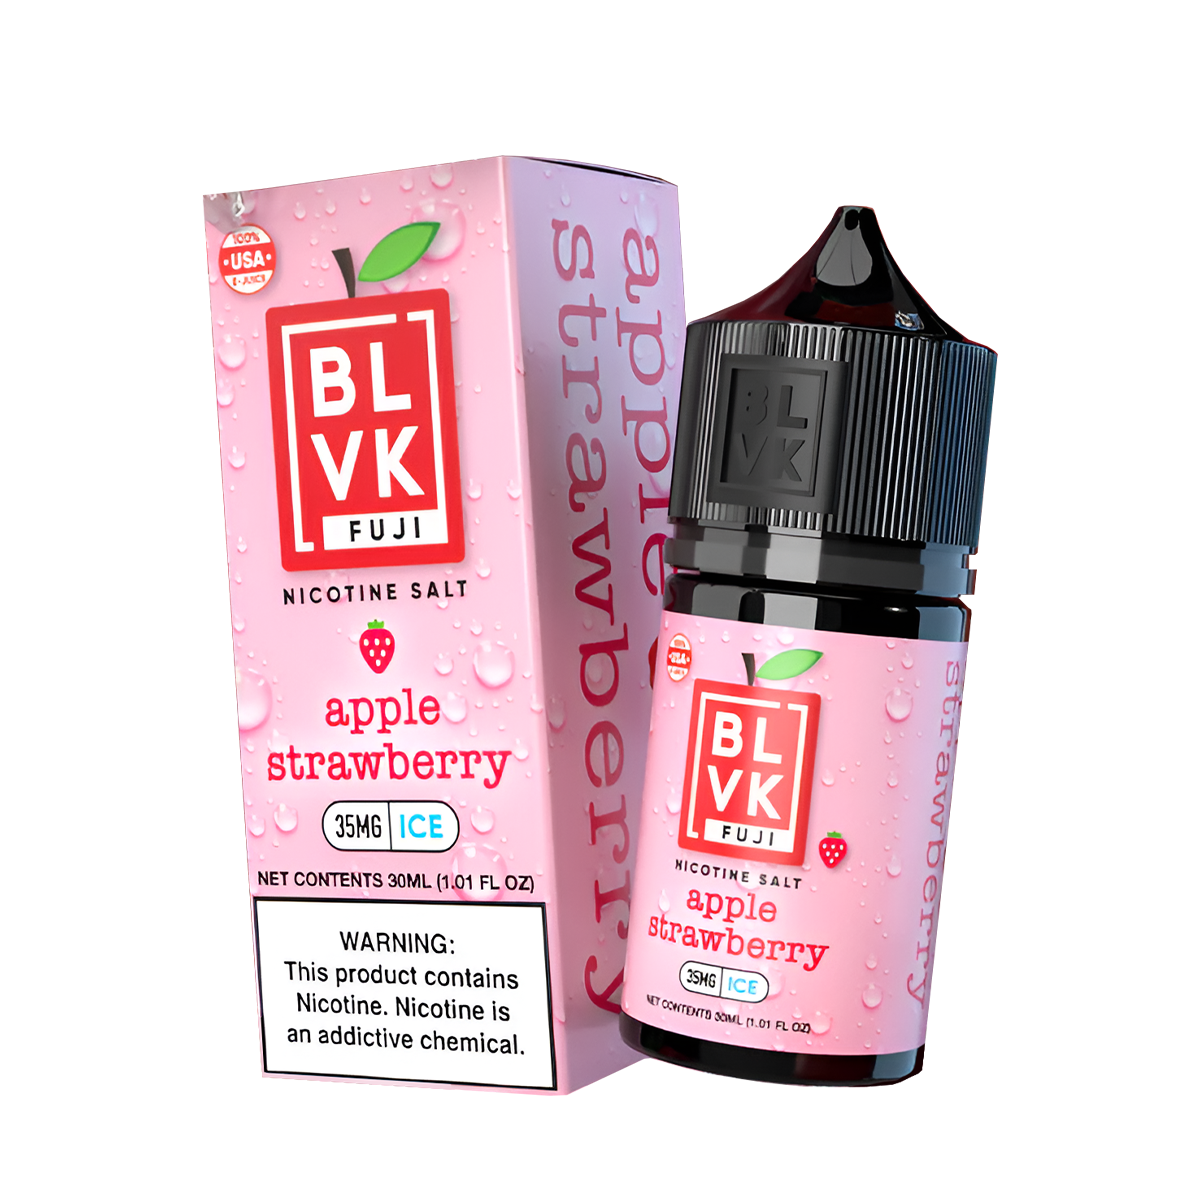 BLVK Fuji Salt Nicotine Vape Juice 35 Mg 30 Ml Apple Strawberry Ice